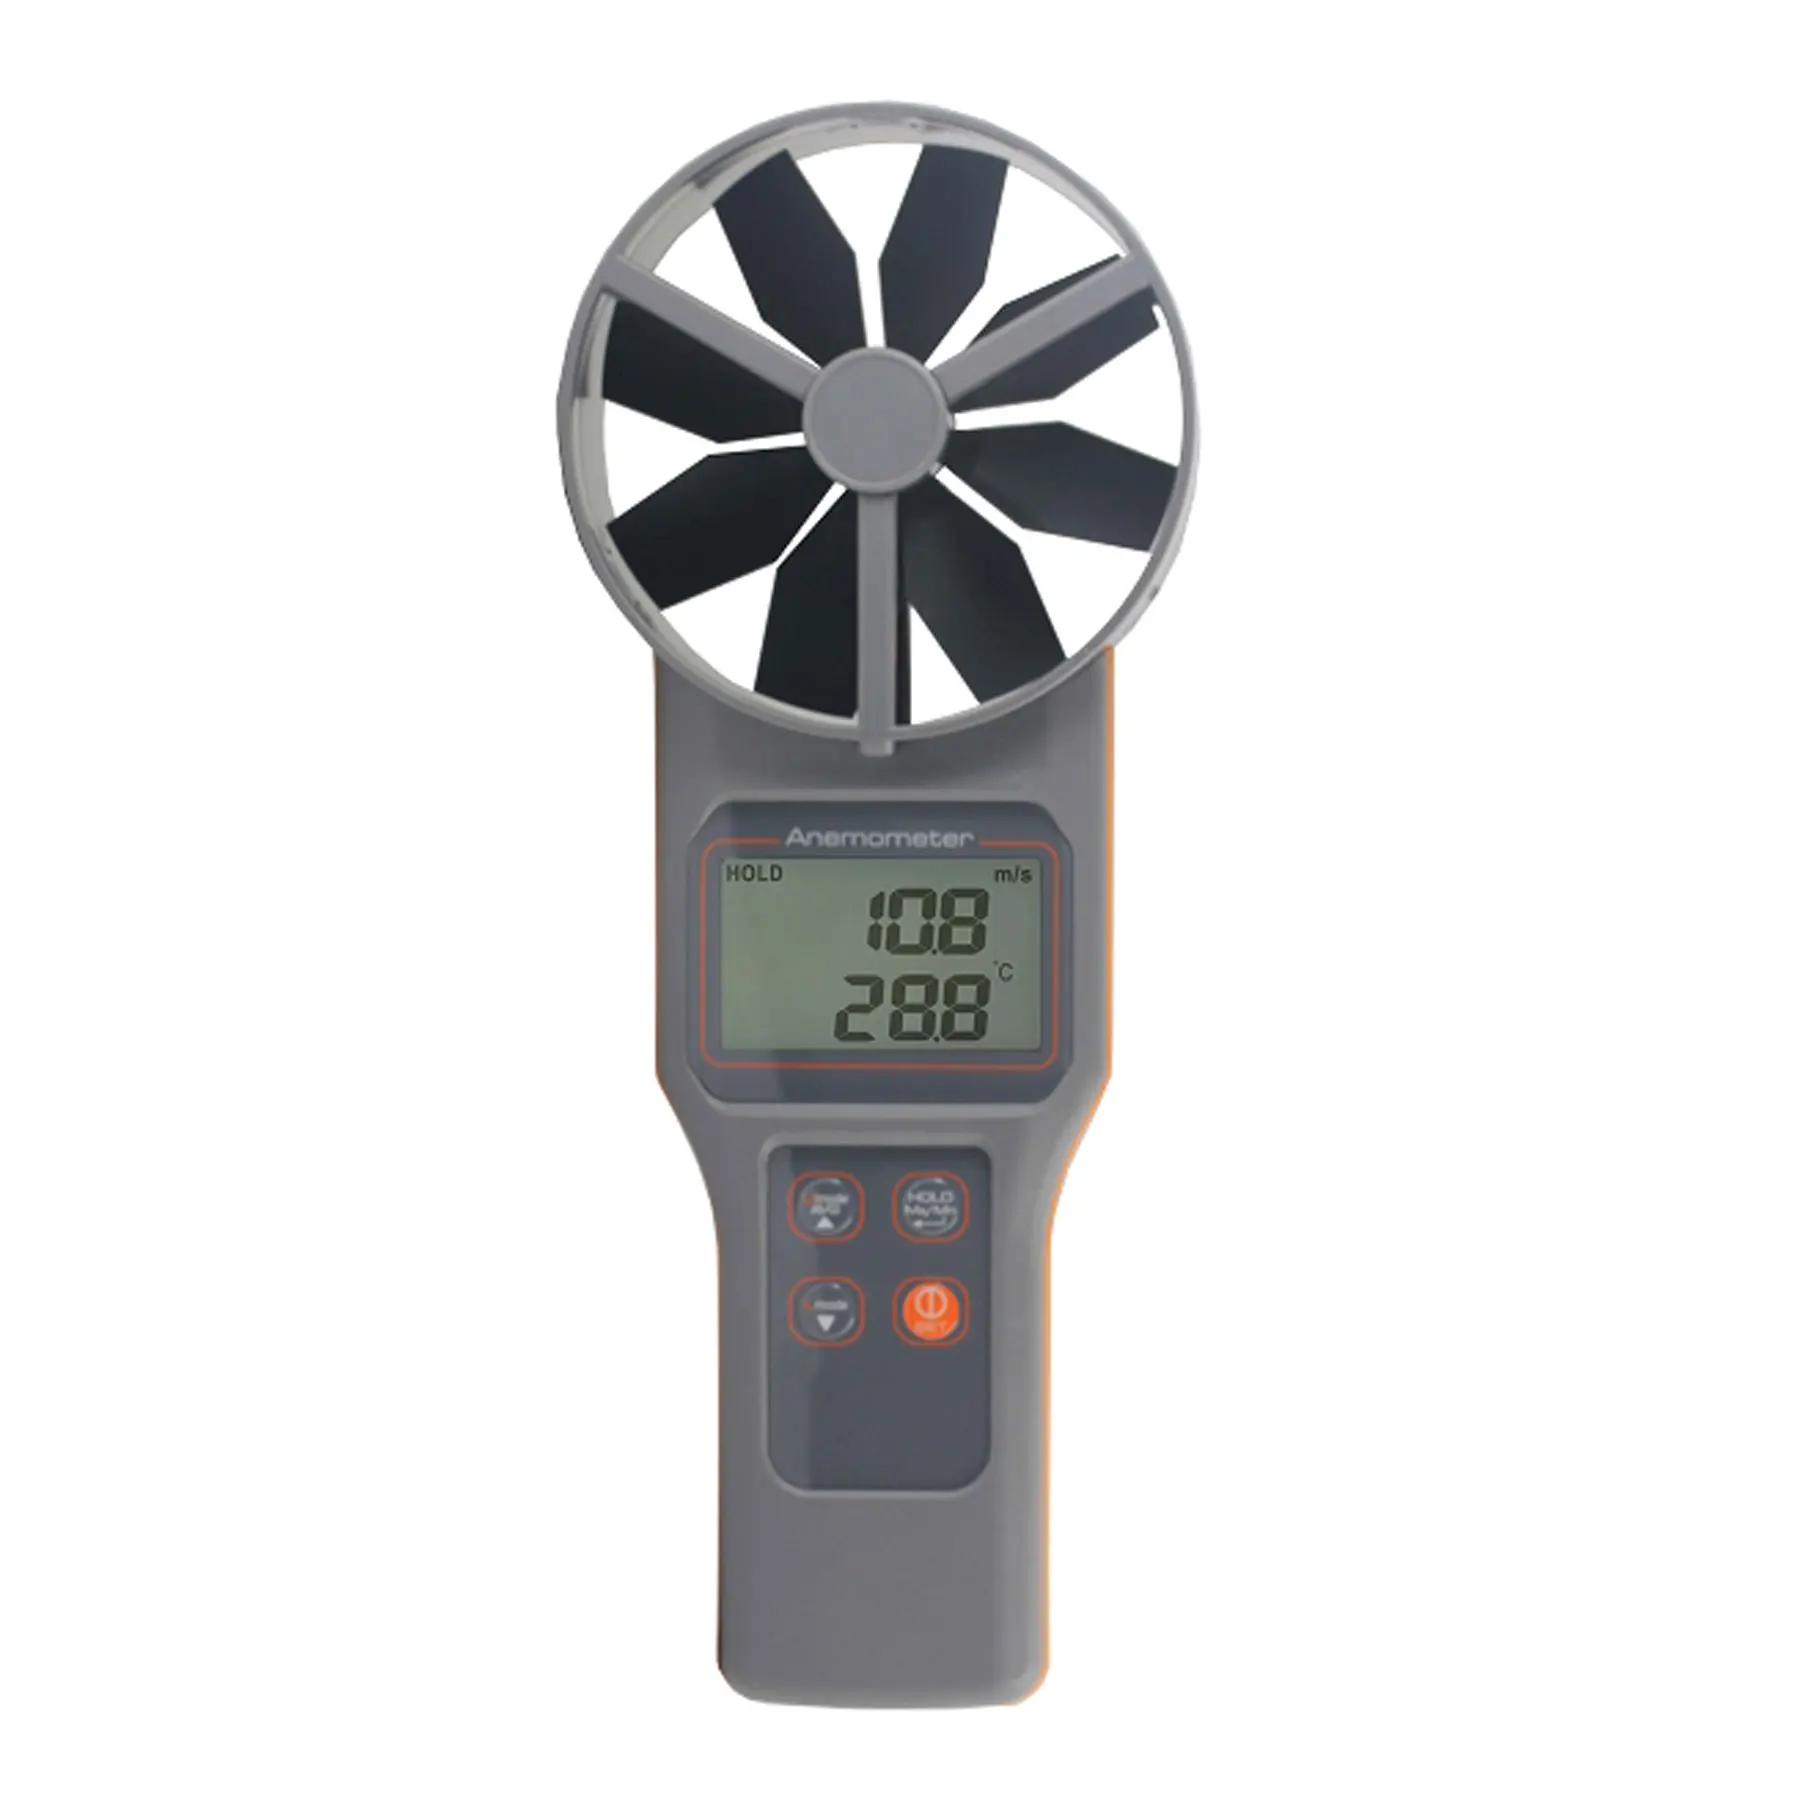 AZ8919 Temp. Анемометр RH CO2 Измеряет скорость воздуха, объем, CO2, температуру, влажность, точку росы и температуру влажной лампы